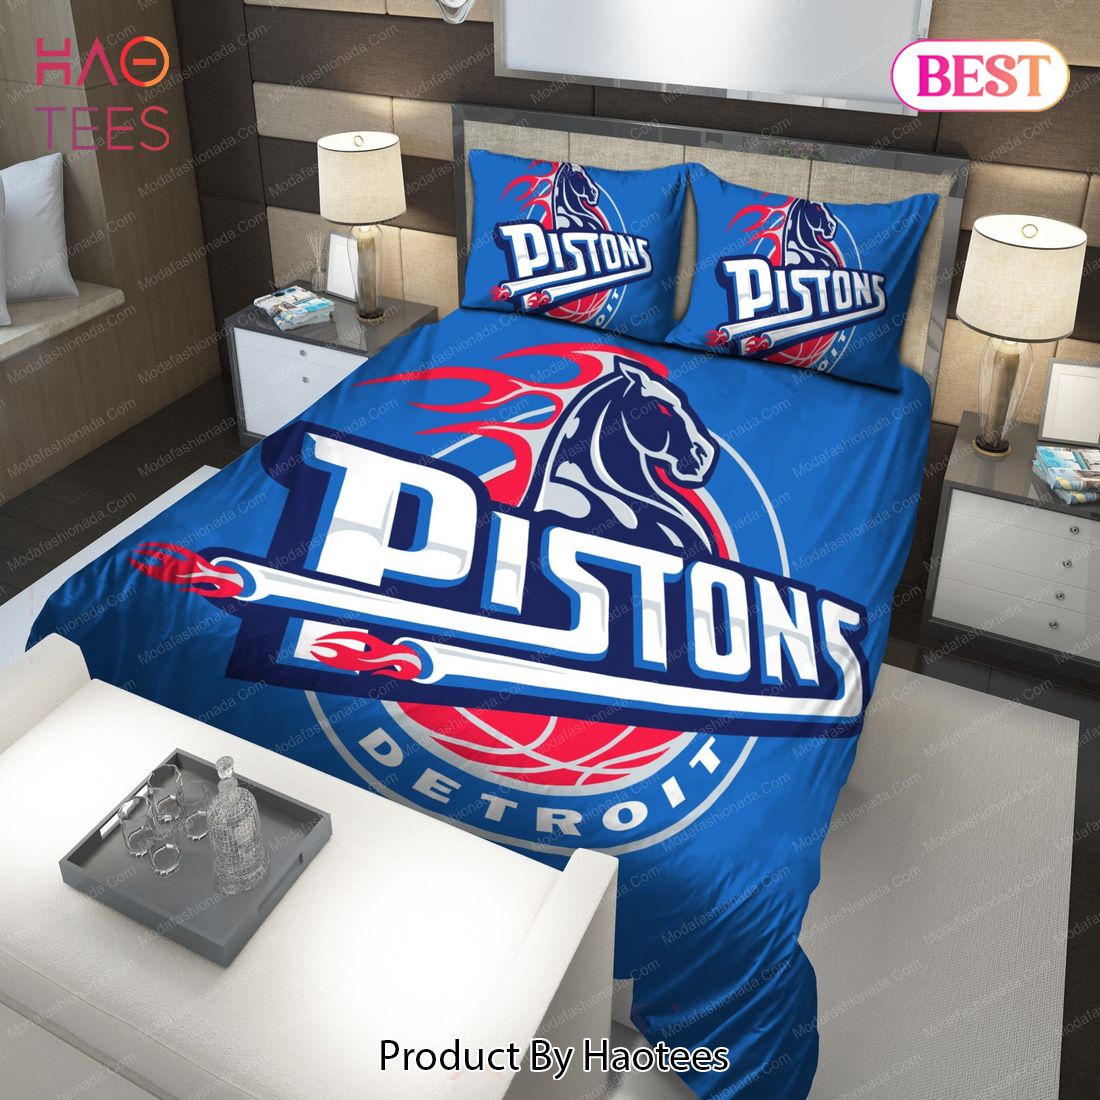 Buy 2001-2005 Logo Detroit Pistons NBA 223 Bedding Sets Bed Sets, Bedroom Sets, Comforter Sets, Duvet Cover, Bedspread